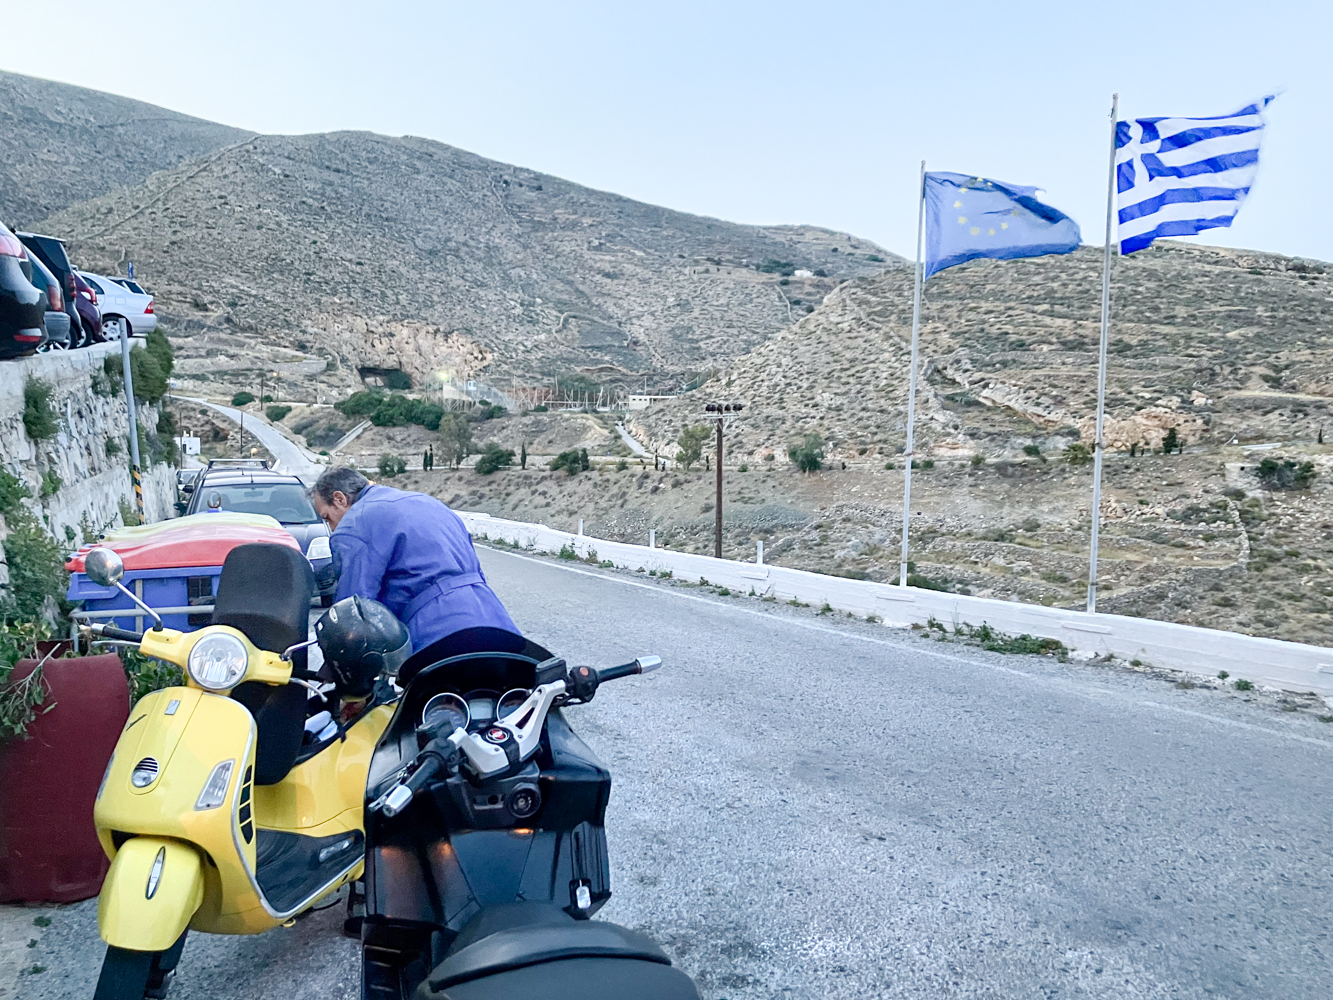 Arrivée à Ano Syros avec à la vespa jaune d’Antonis MARAGOS, peu avant l’interview © Globe Reporters